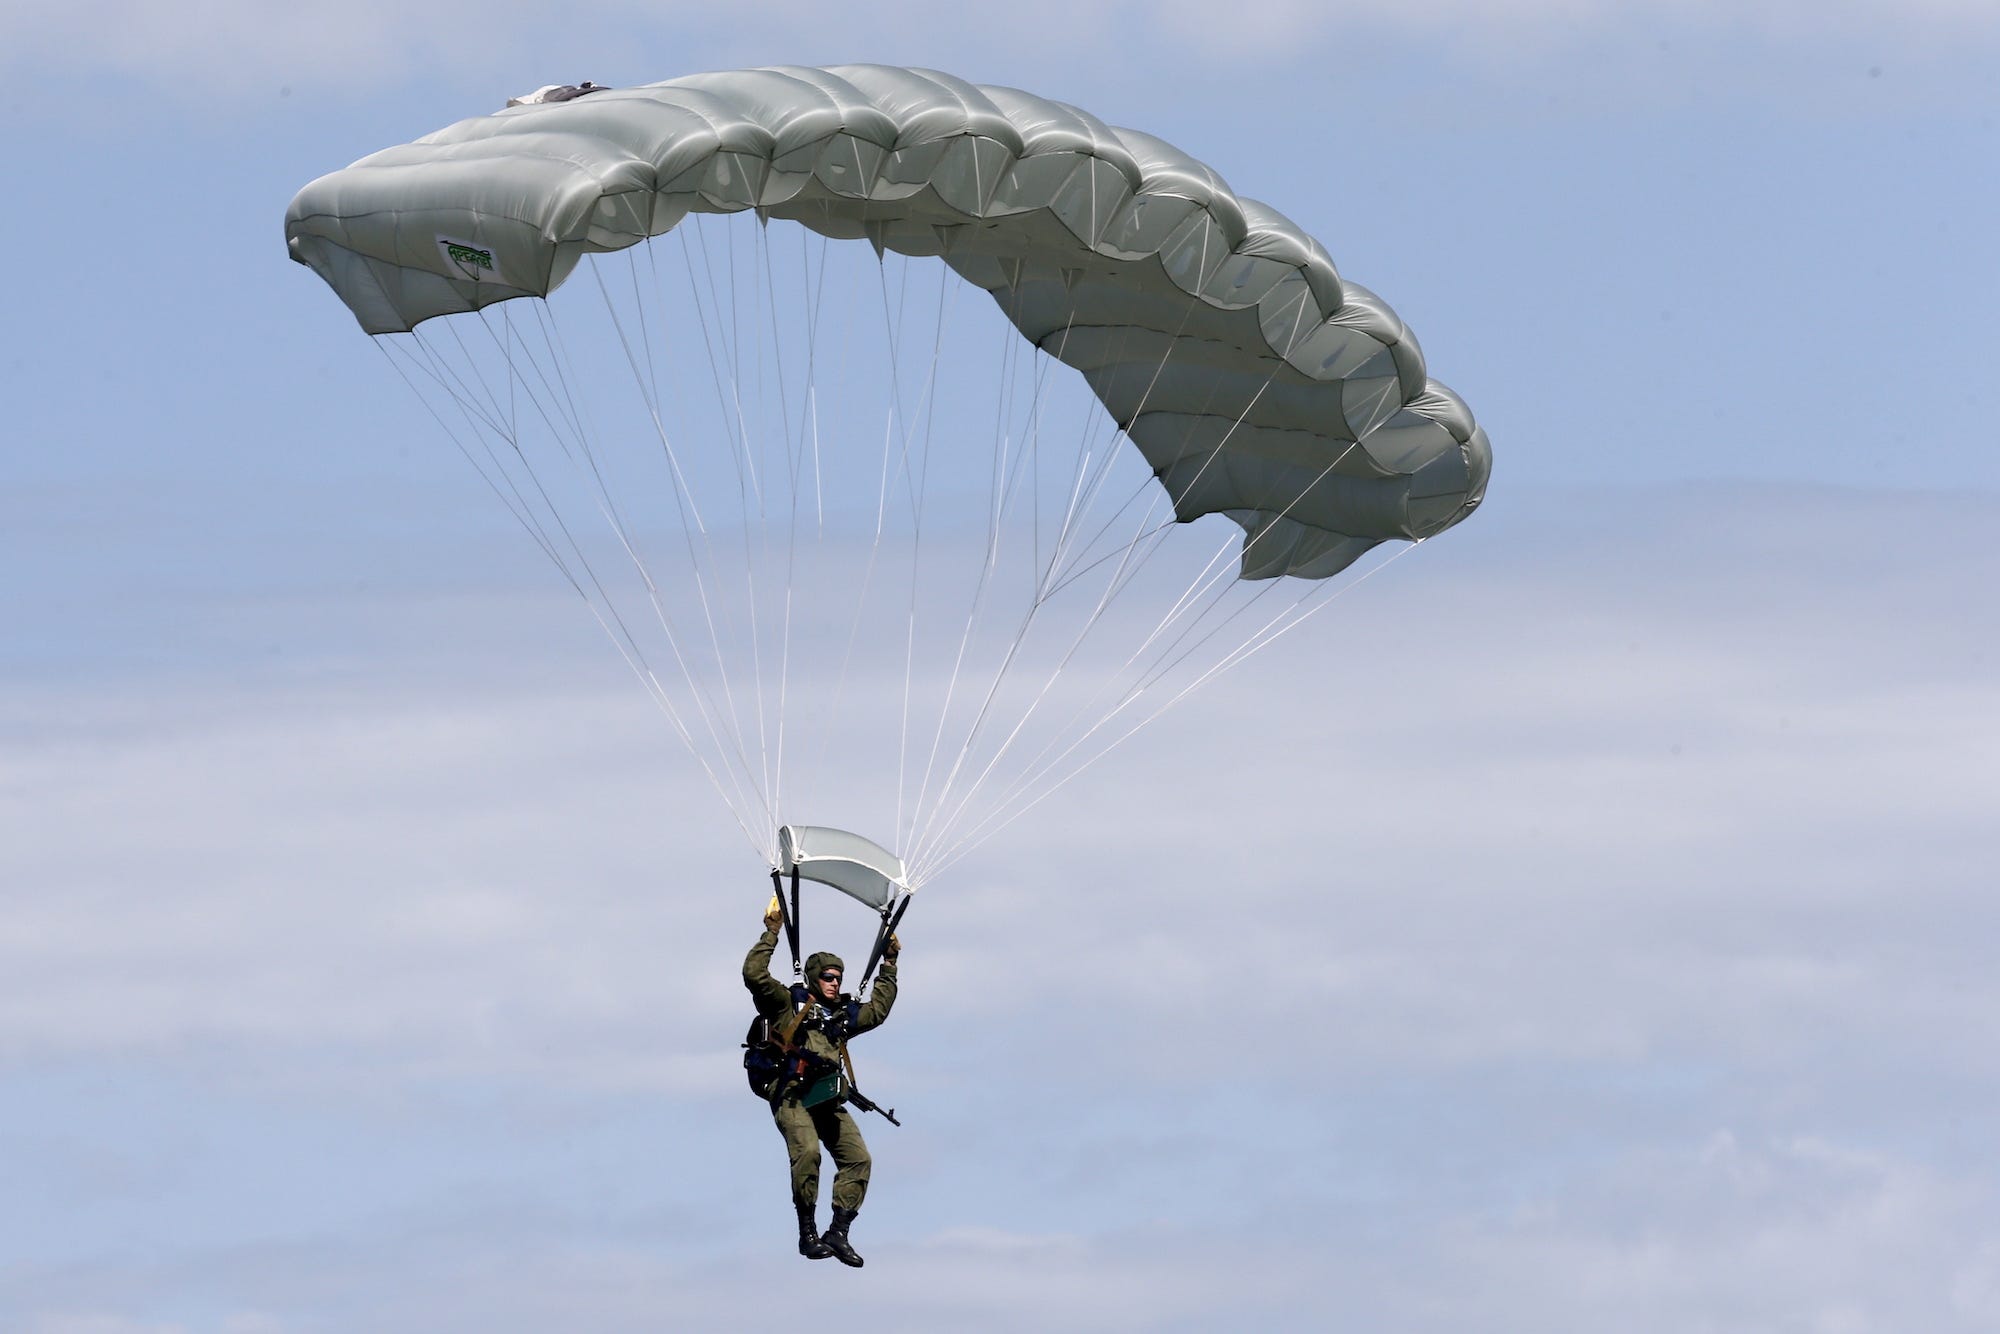 Een lid van een speciale eenheid van het Russische leger springt met een parachute uit een helikopter tijdens een oefening op 7 juni 2019. Foto: Valery MatytsinTASS via Getty Images